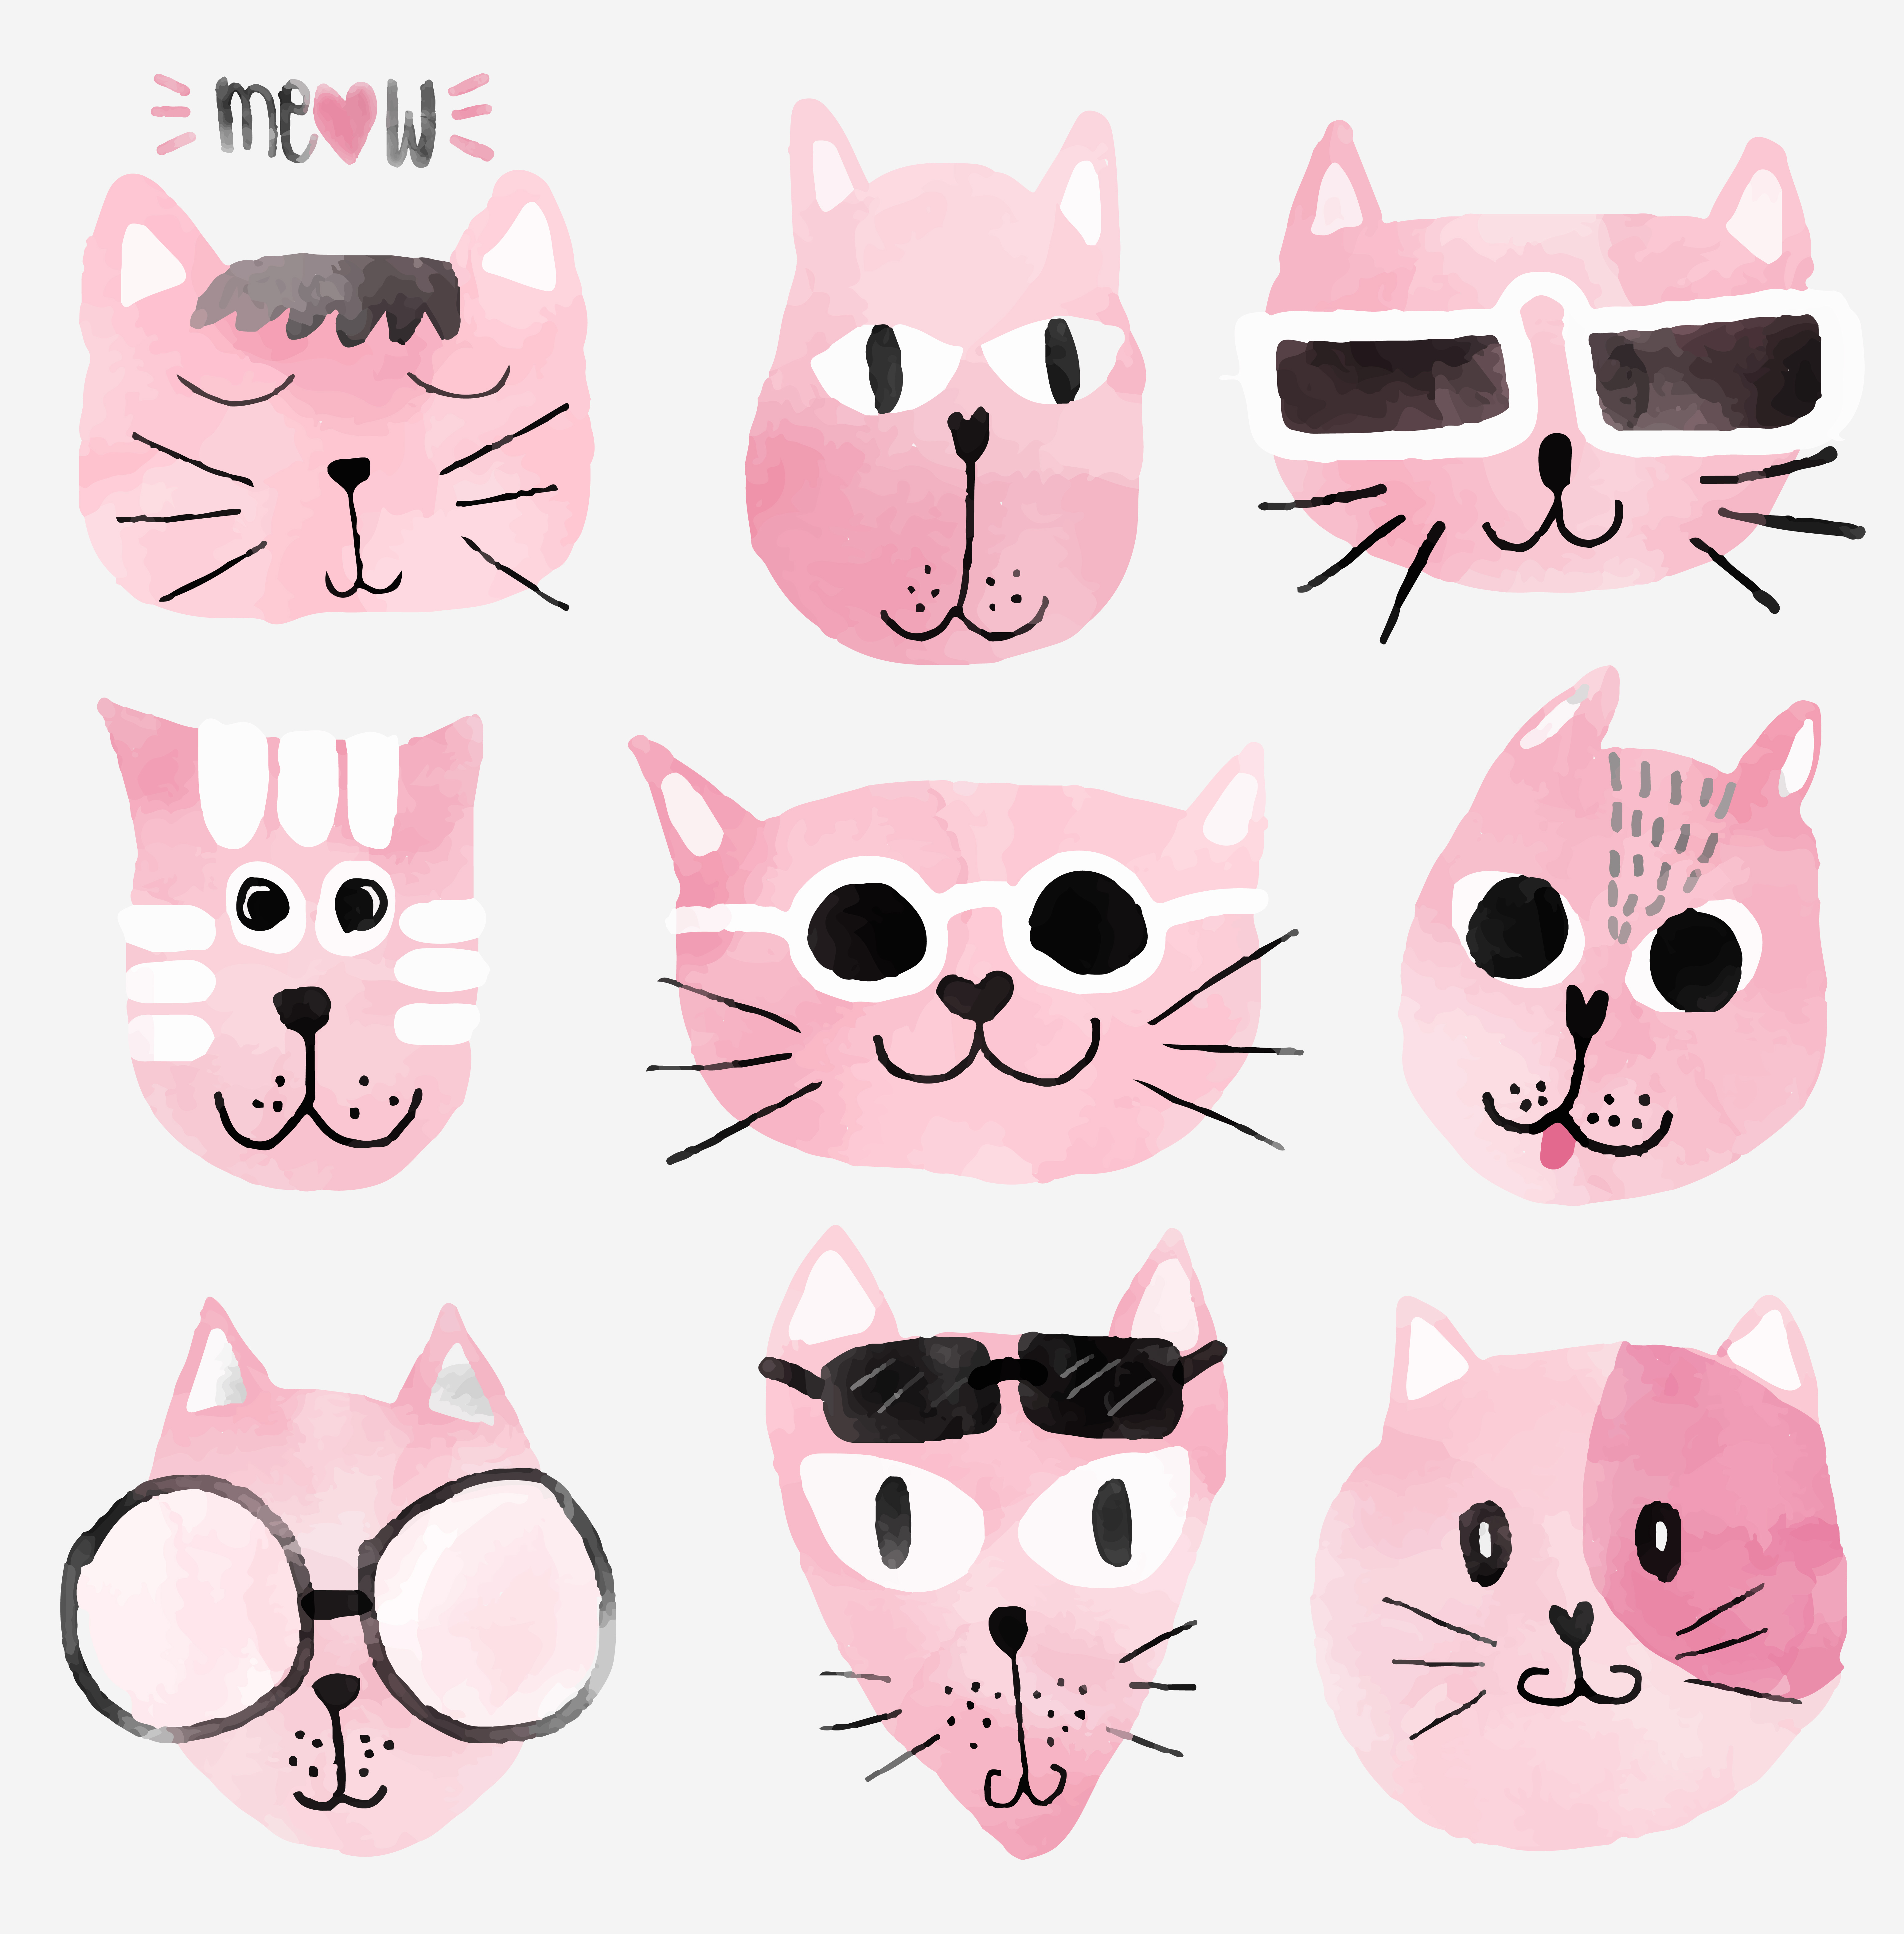 Pink Watercolour Funny Cat Faces Set Download Free Vectors Clipart Graphics Vector Art